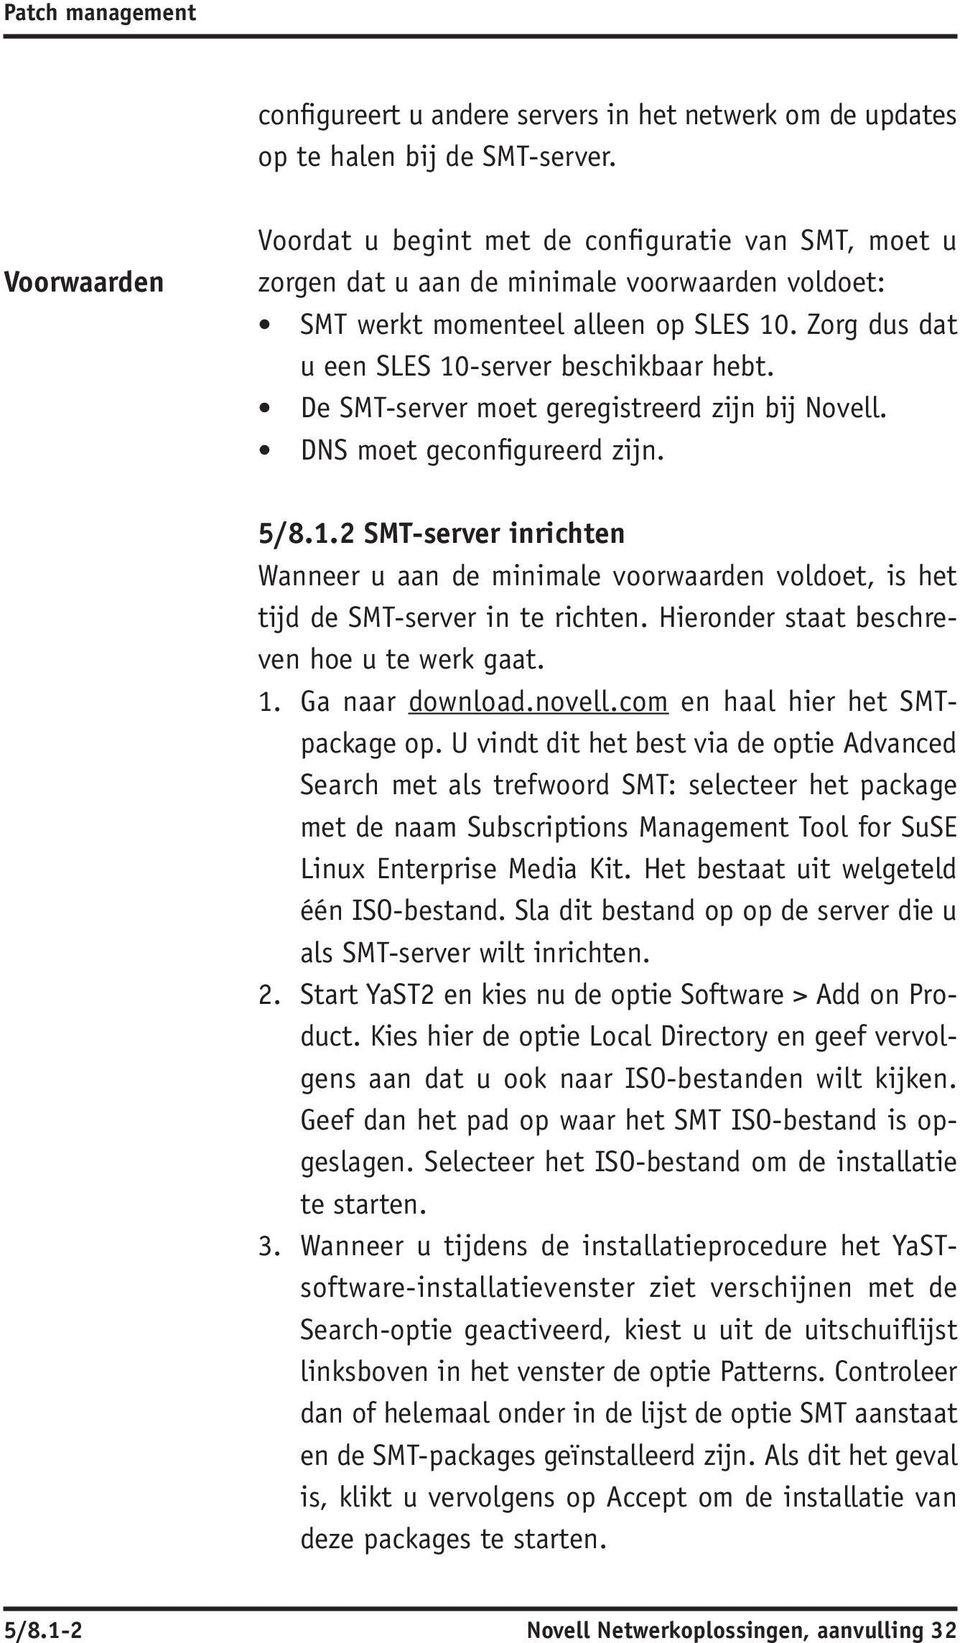 Zorg dus dat u een SLES 10-server beschikbaar hebt. De SMT -server moet geregistreerd zijn bij Novell. DNS moet geconfigureerd zijn. 5/8.1.2 SMT -server inrichten Wanneer u aan de minimale voorwaarden voldoet, is het tijd de SMT -server in te richten.